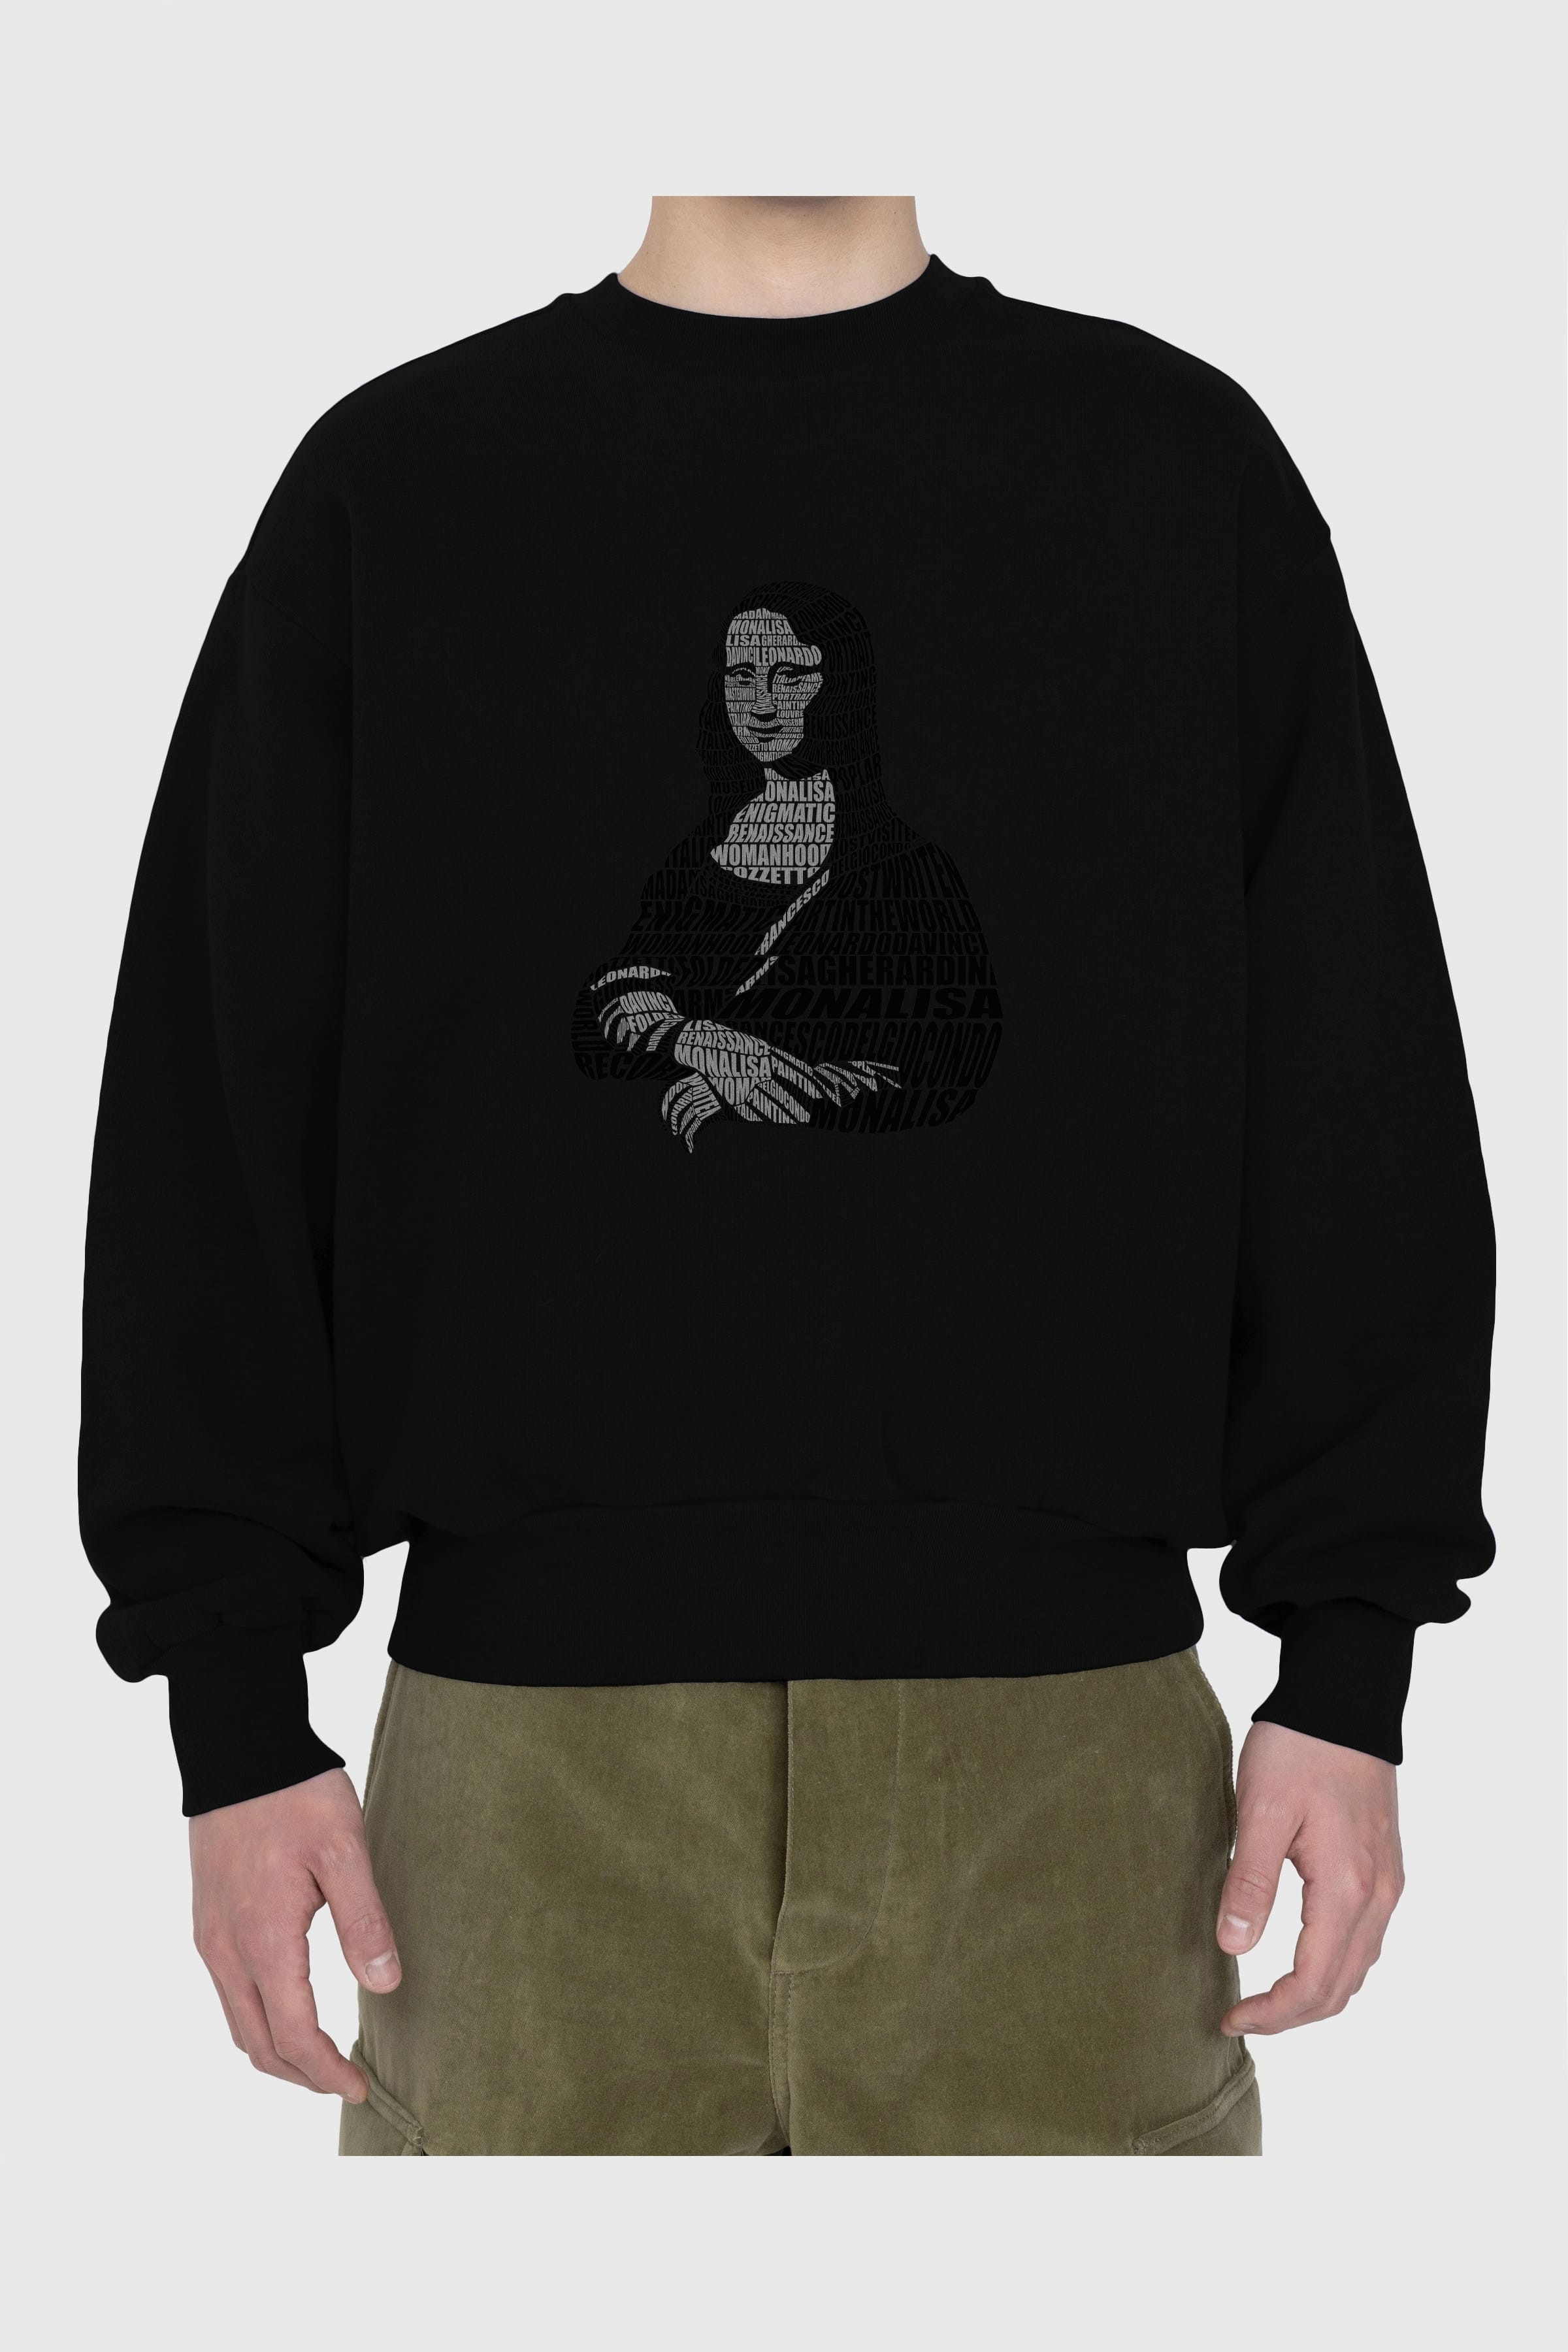 Mona Lisa Calligram Ön Baskılı Oversize Sweatshirt Erkek Kadın Unisex